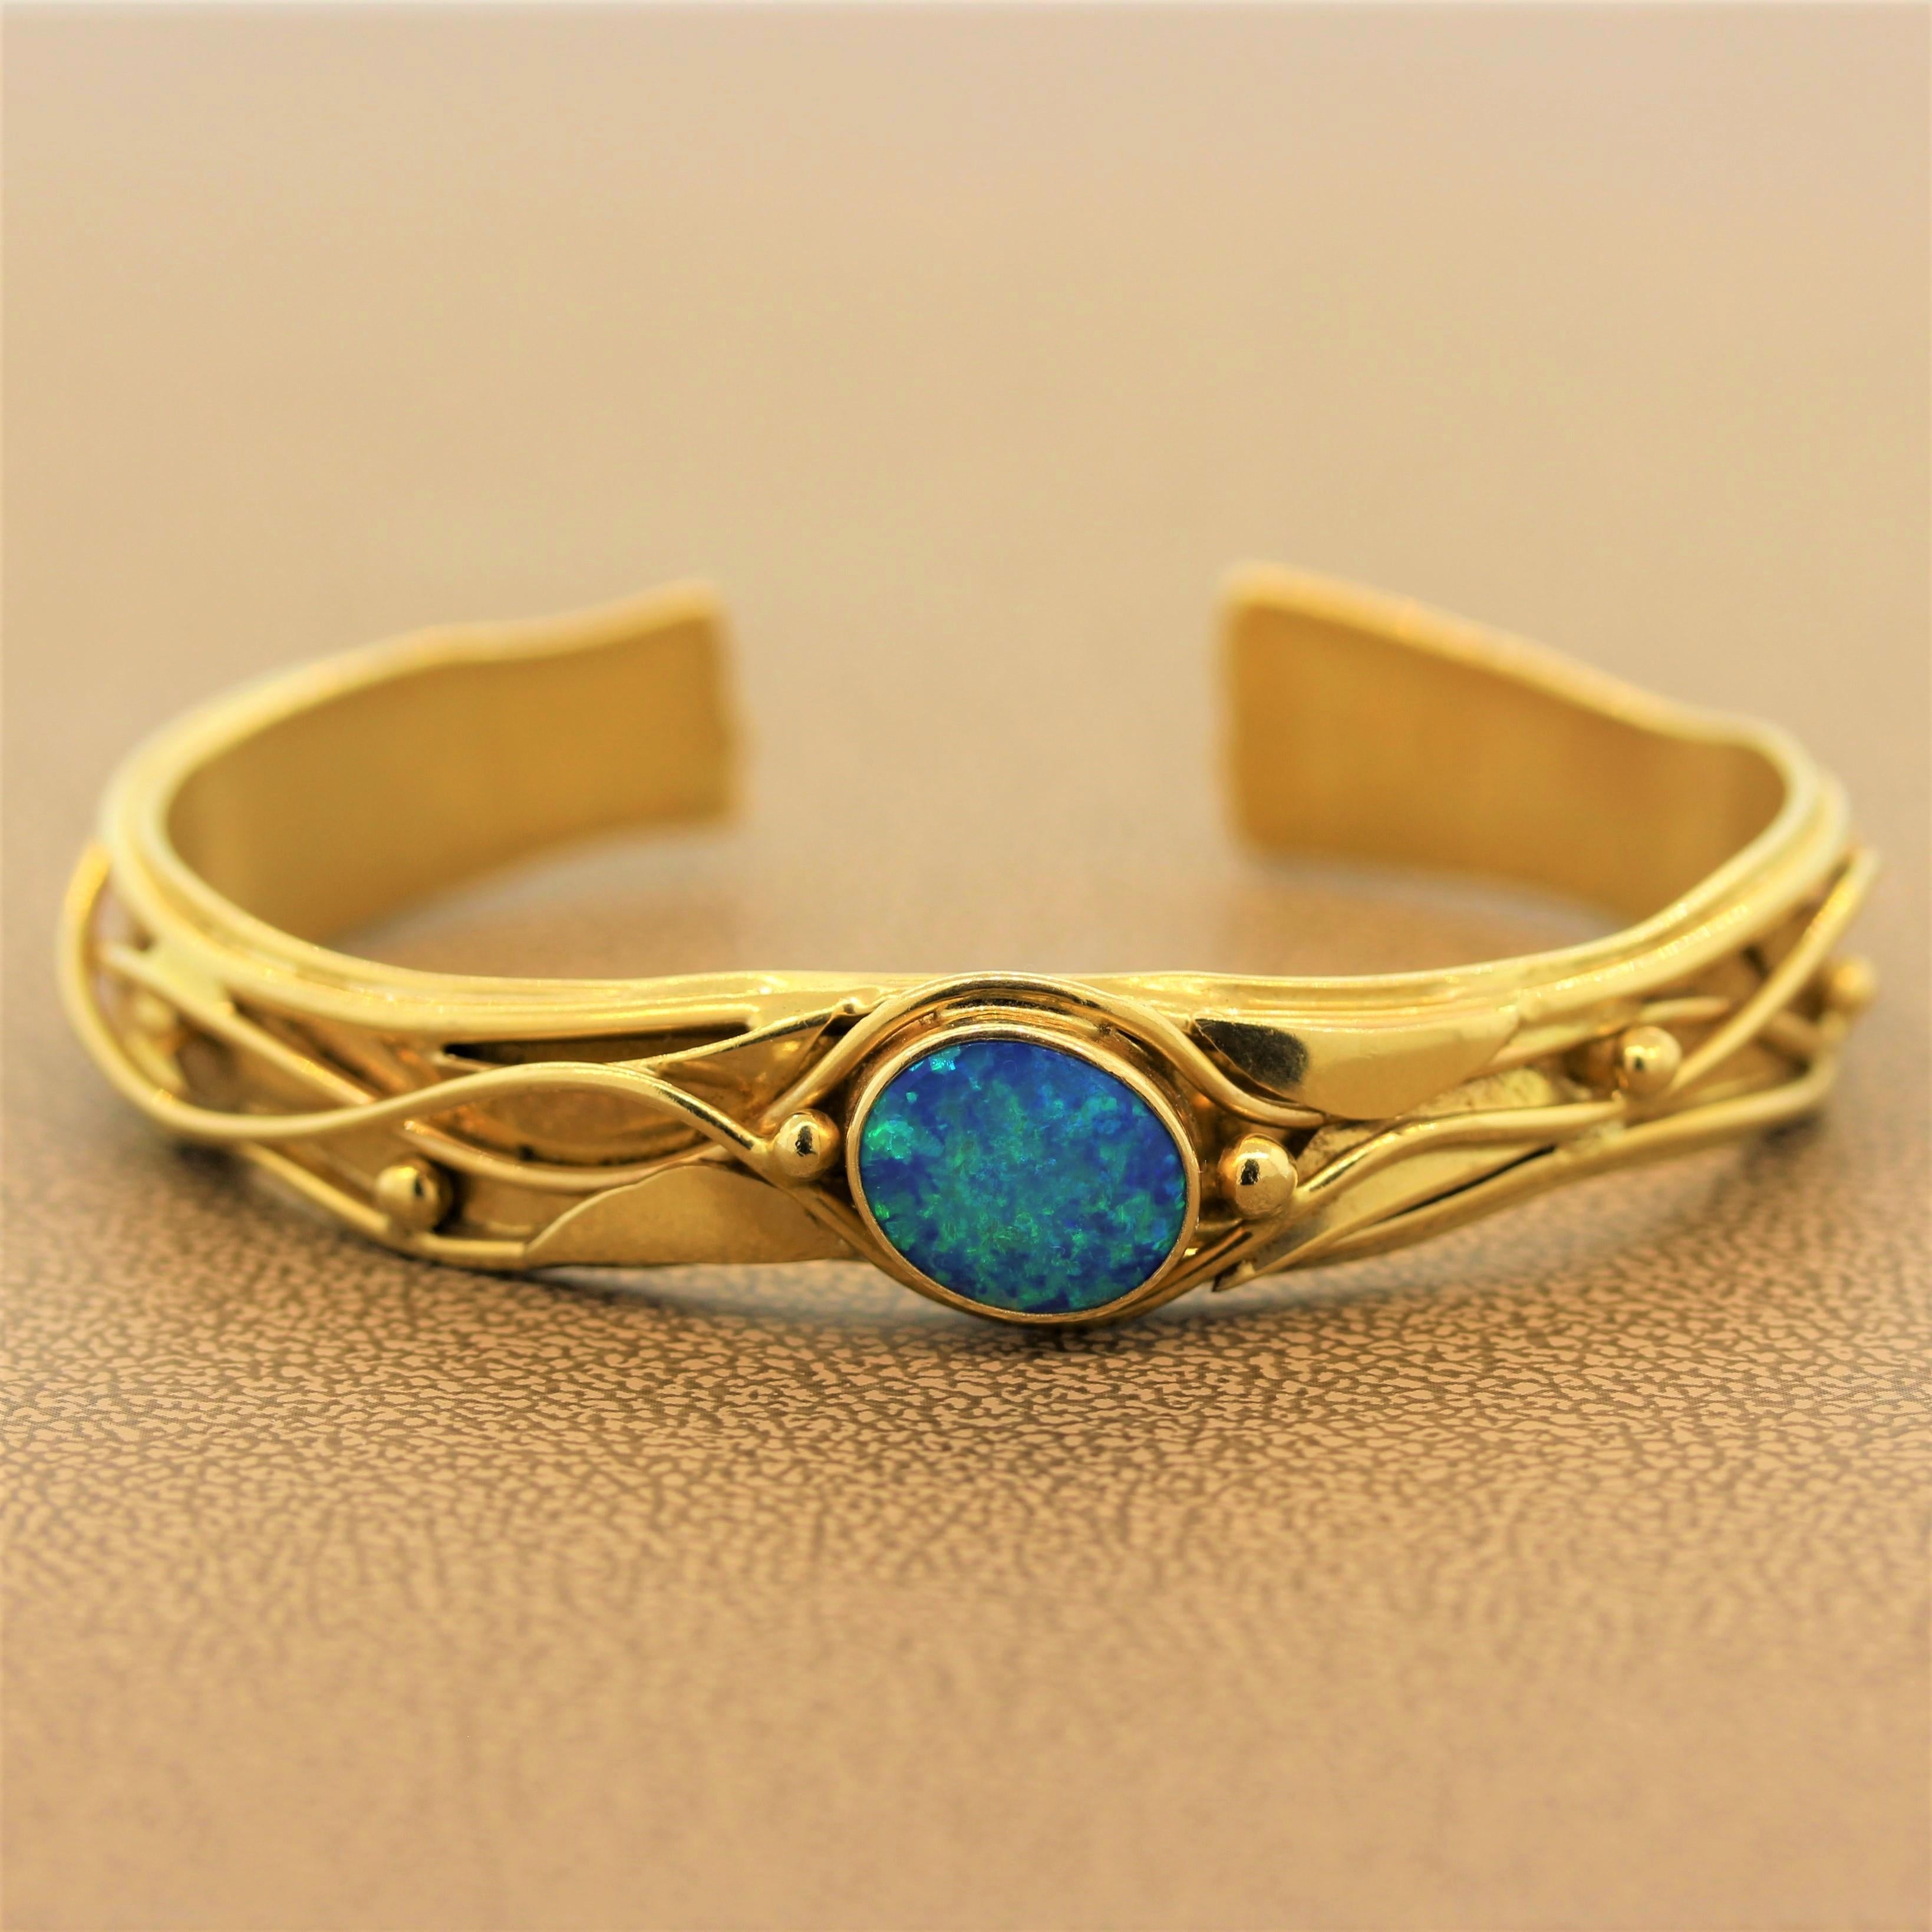 Manchette de la marque River ornée d'une opale australienne. L'opale de forme ovale est sertie dans une monture en or jaune 14 carats avec des perles et un filigrane ondulant. La manchette est munie d'une ouverture qui facilite l'accès pour